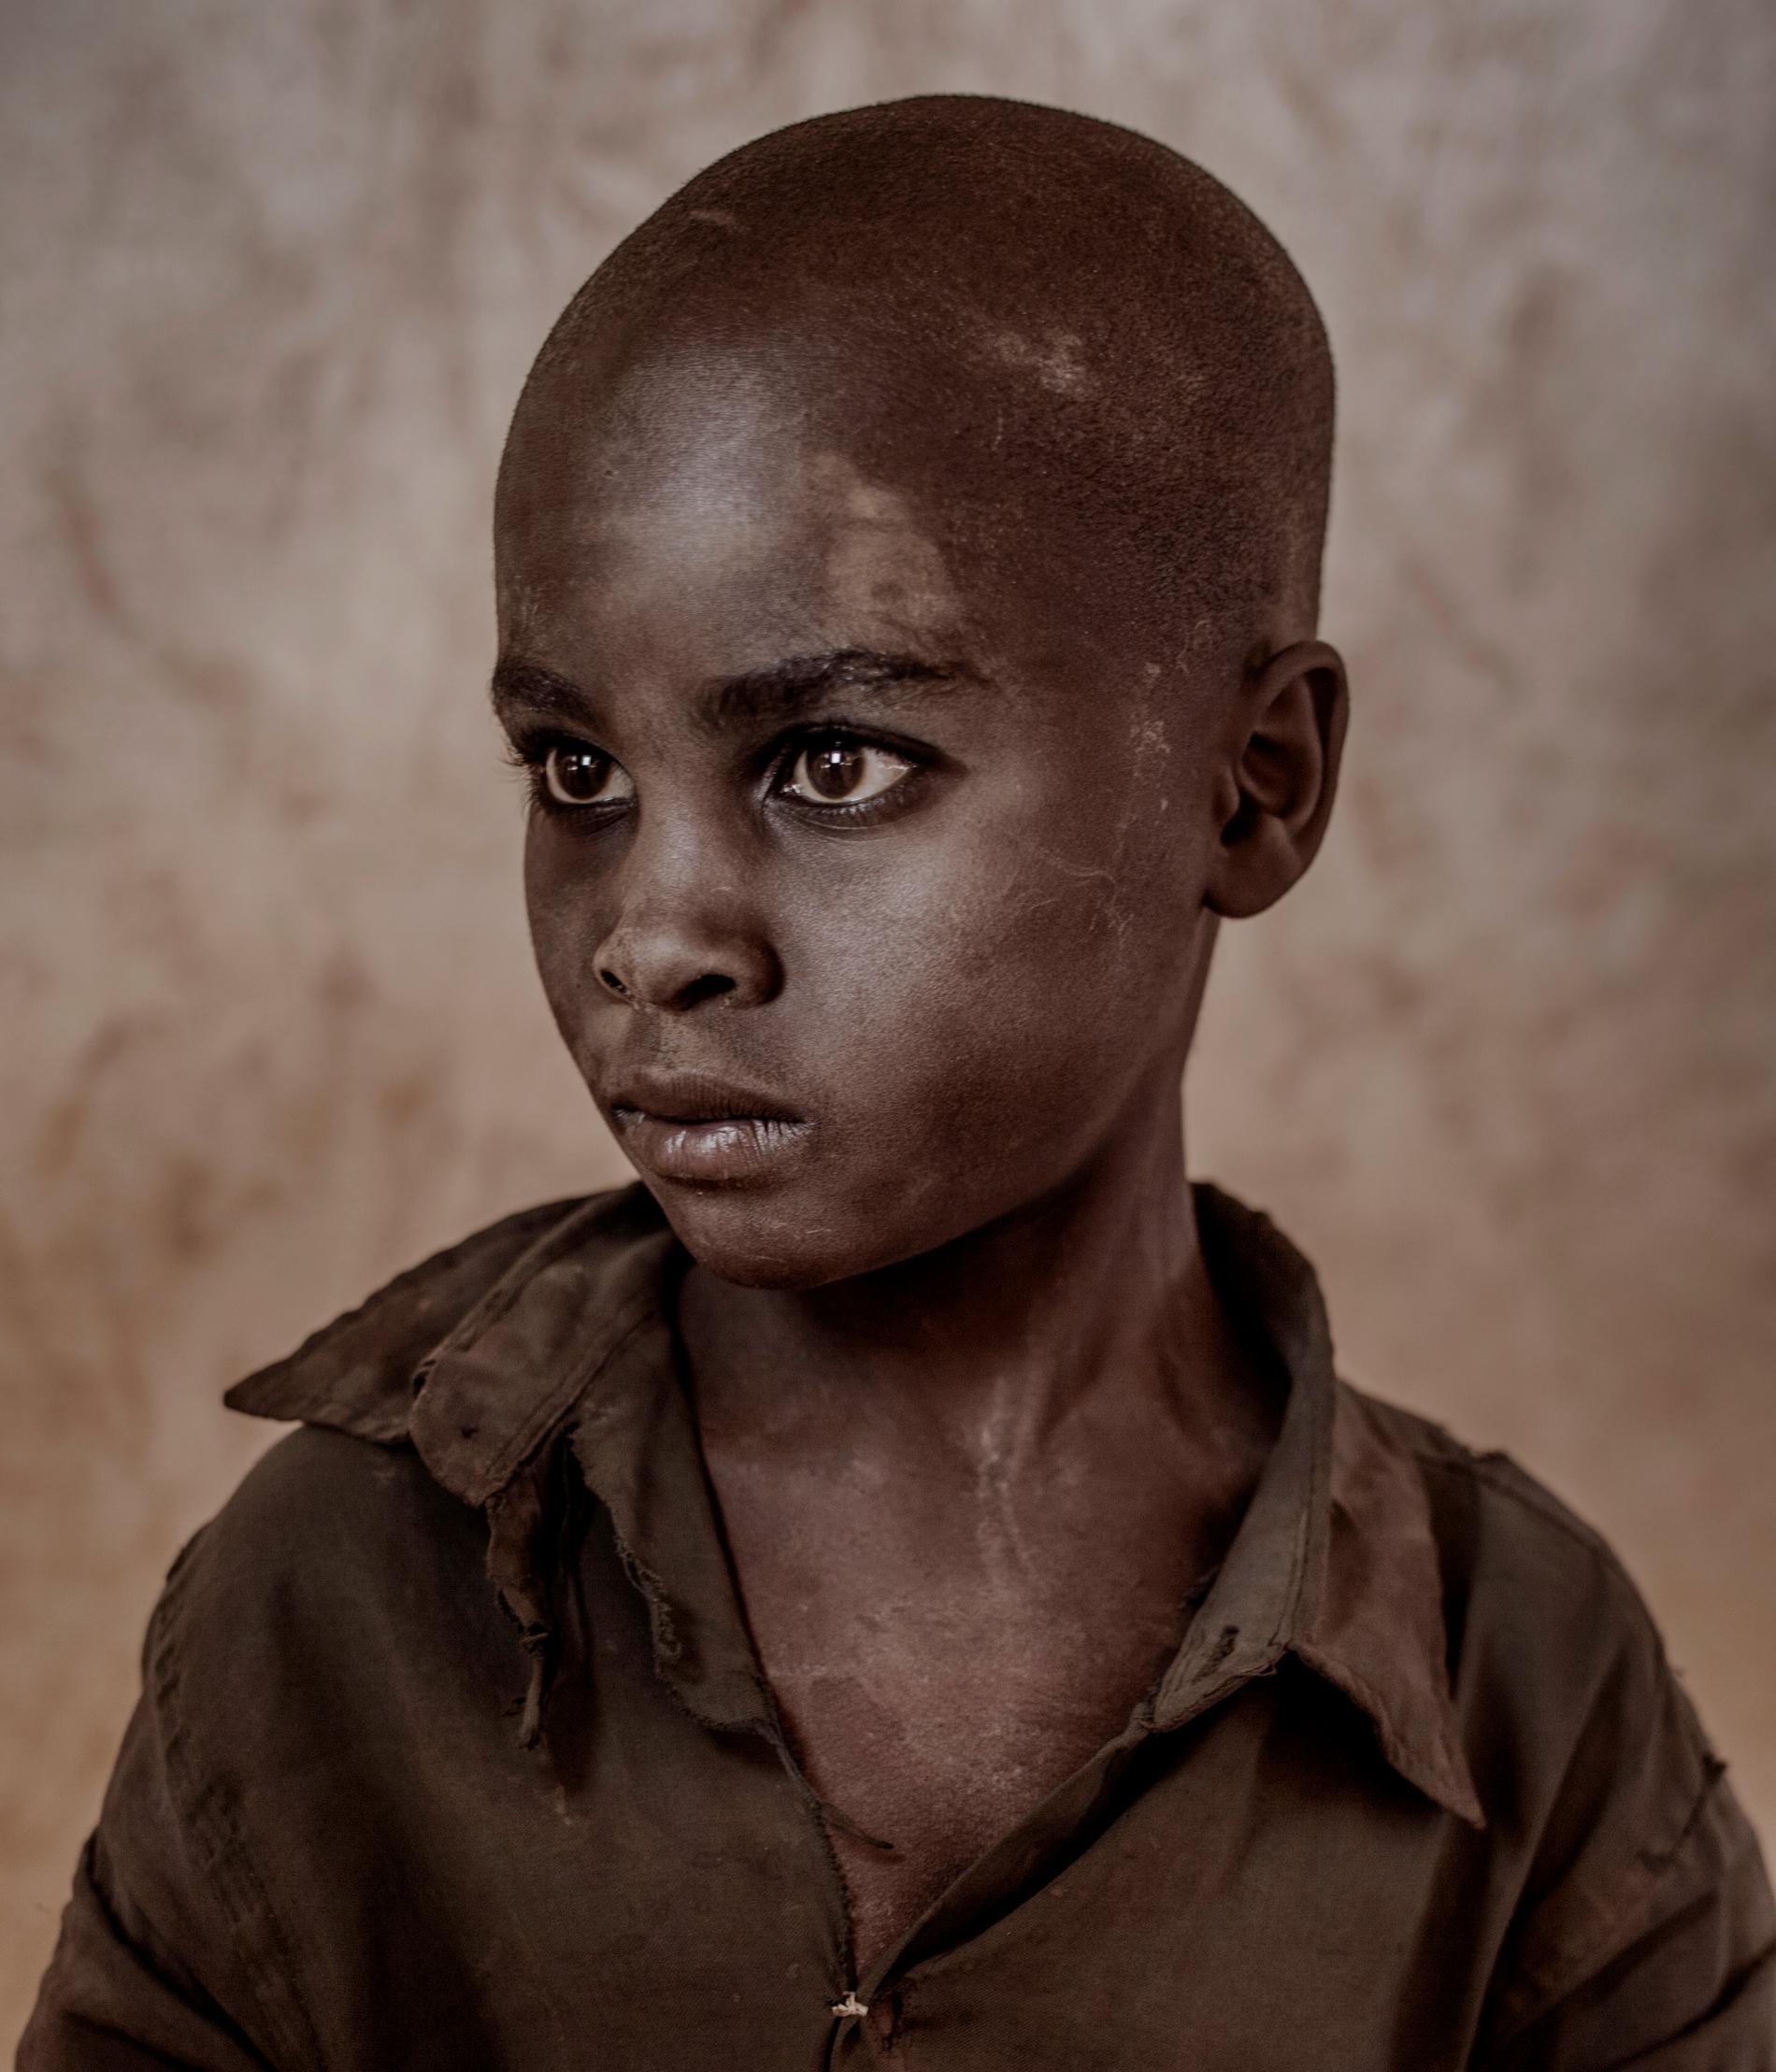 Årets fotograf 2017, Magnus Wennman.  Malawi är ett av världens fattigaste länder. Här är torkan och svälten ett faktum samtidigt som människor är på flykt undan krig, mord och förföljelse.  Moses, 11. 